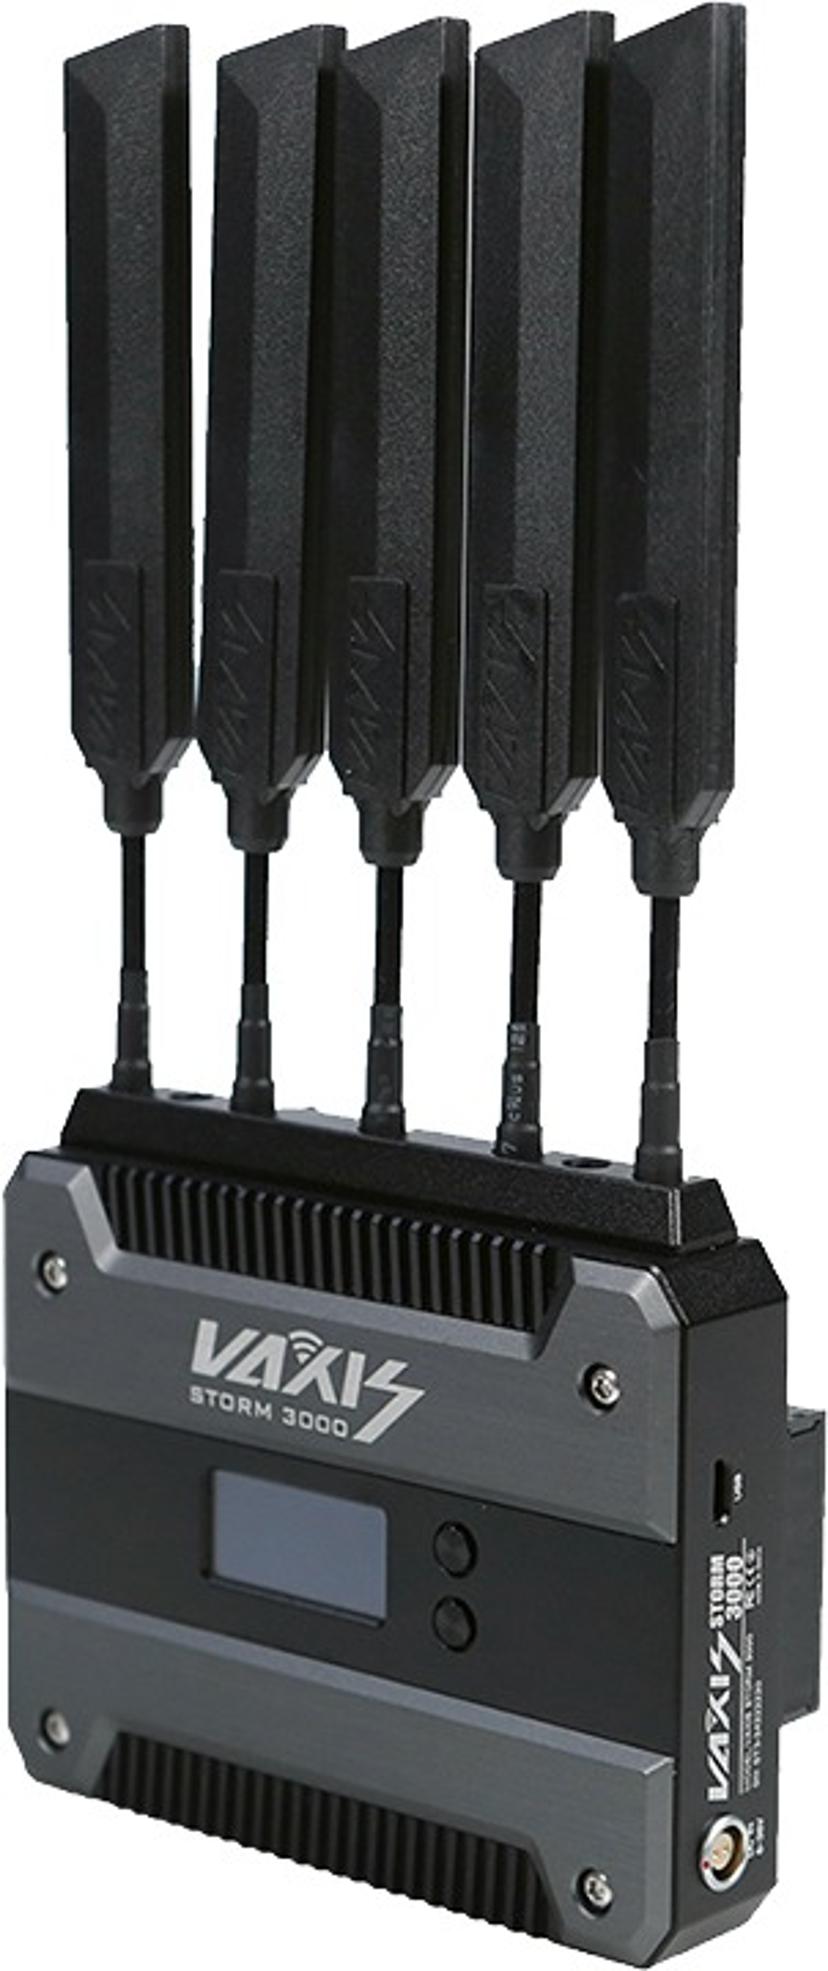 VAXIS Vaxis Storm 3000 DV Kit (V Mount)